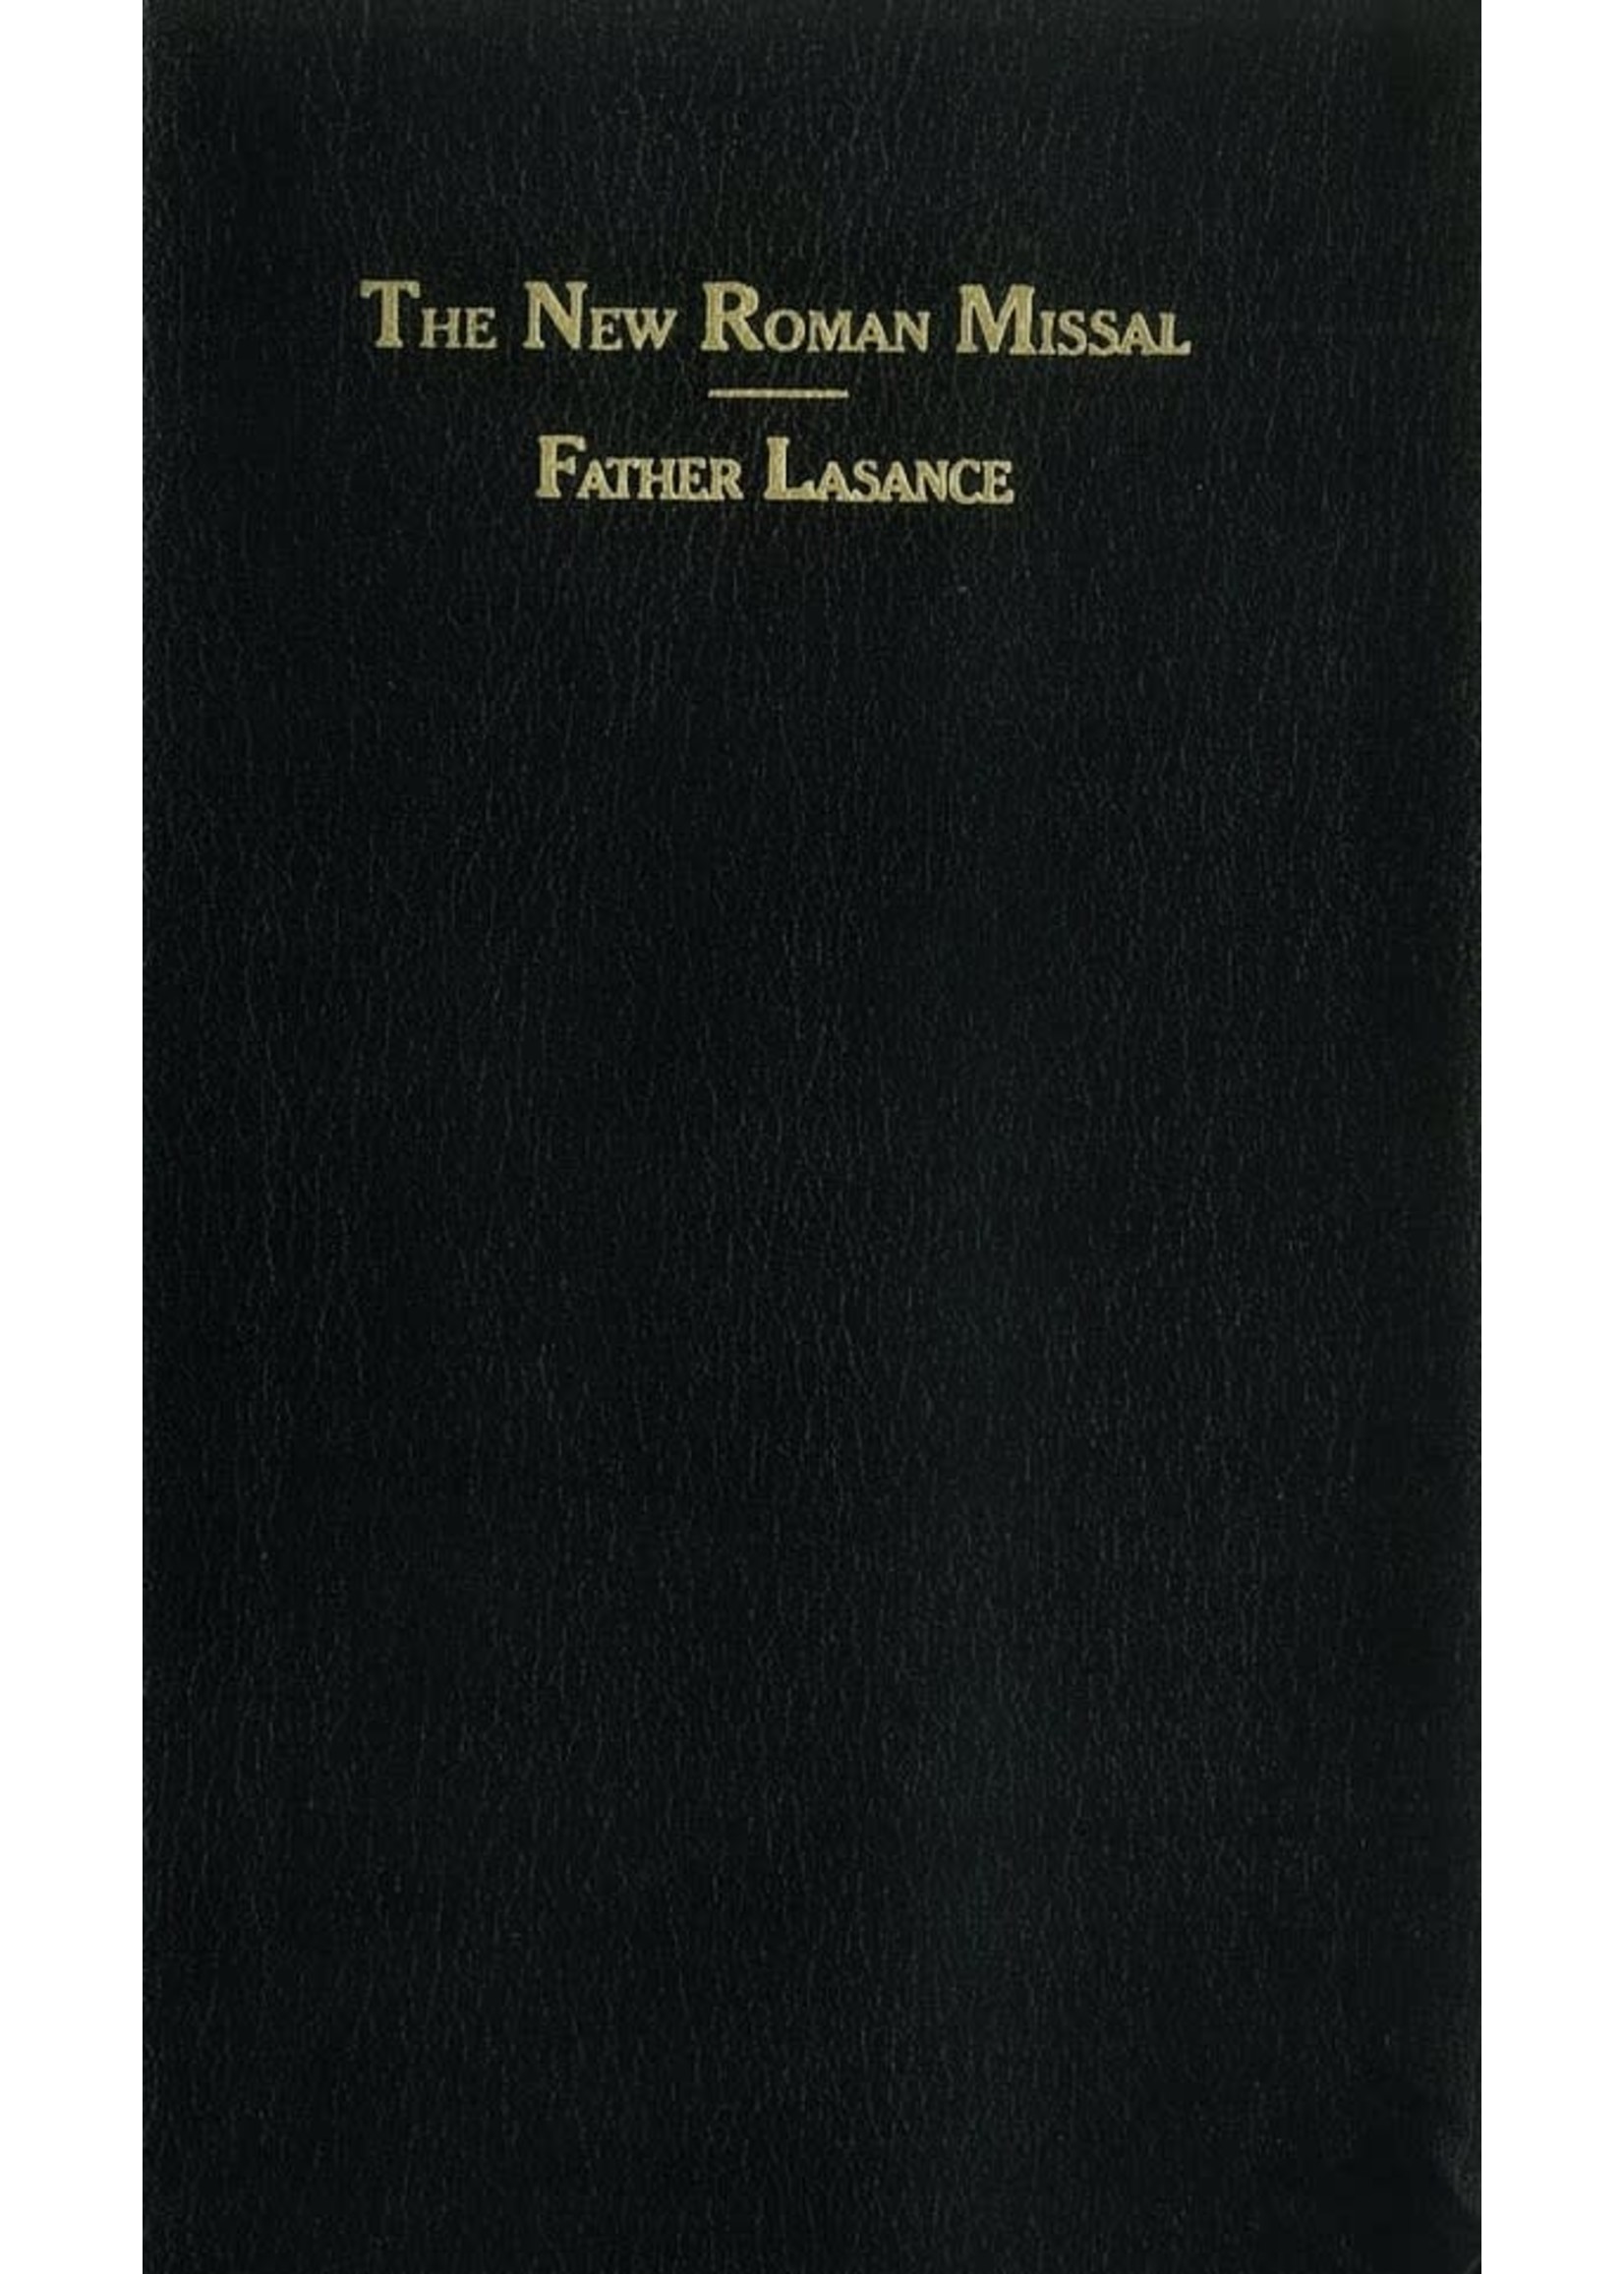 New Roman Missal: Father Lasance